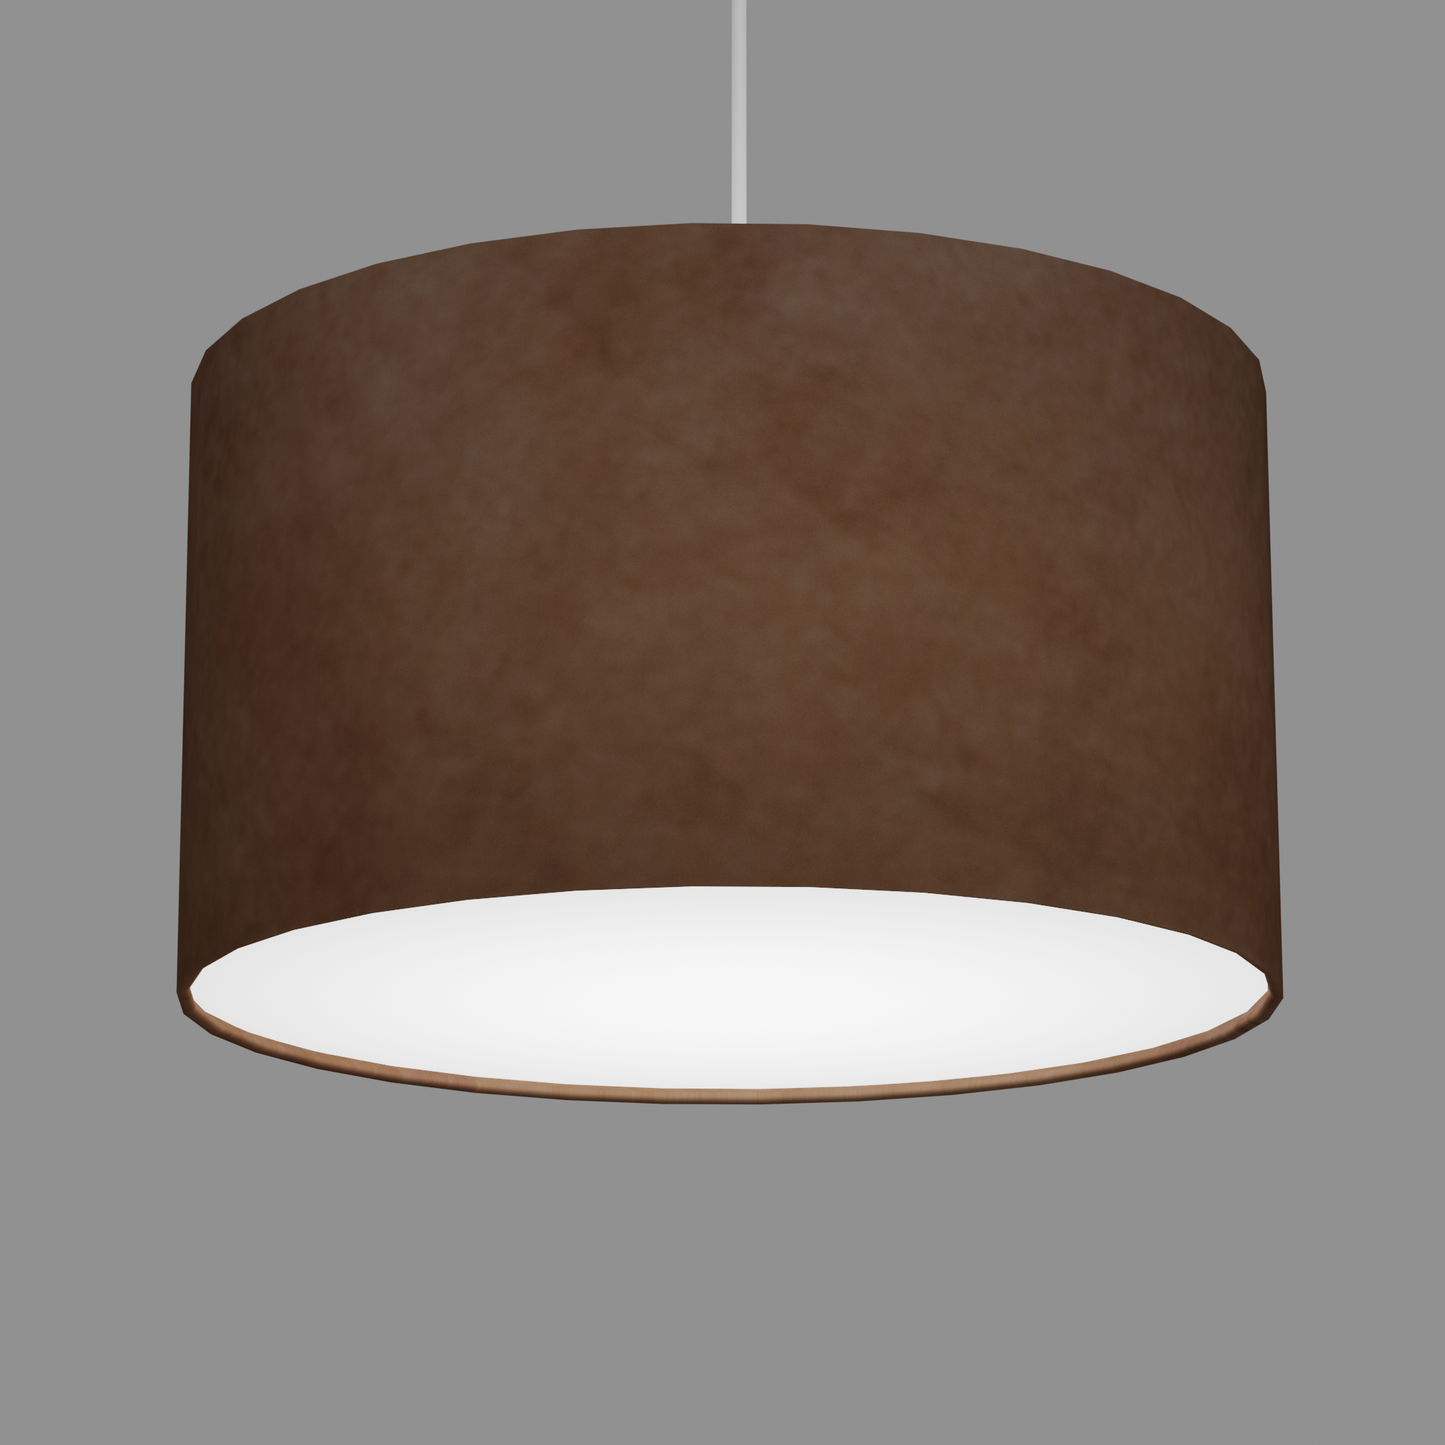 Drum Lamp Shade - P58 - Brown Lokta, 35cm(d) x 20cm(h)